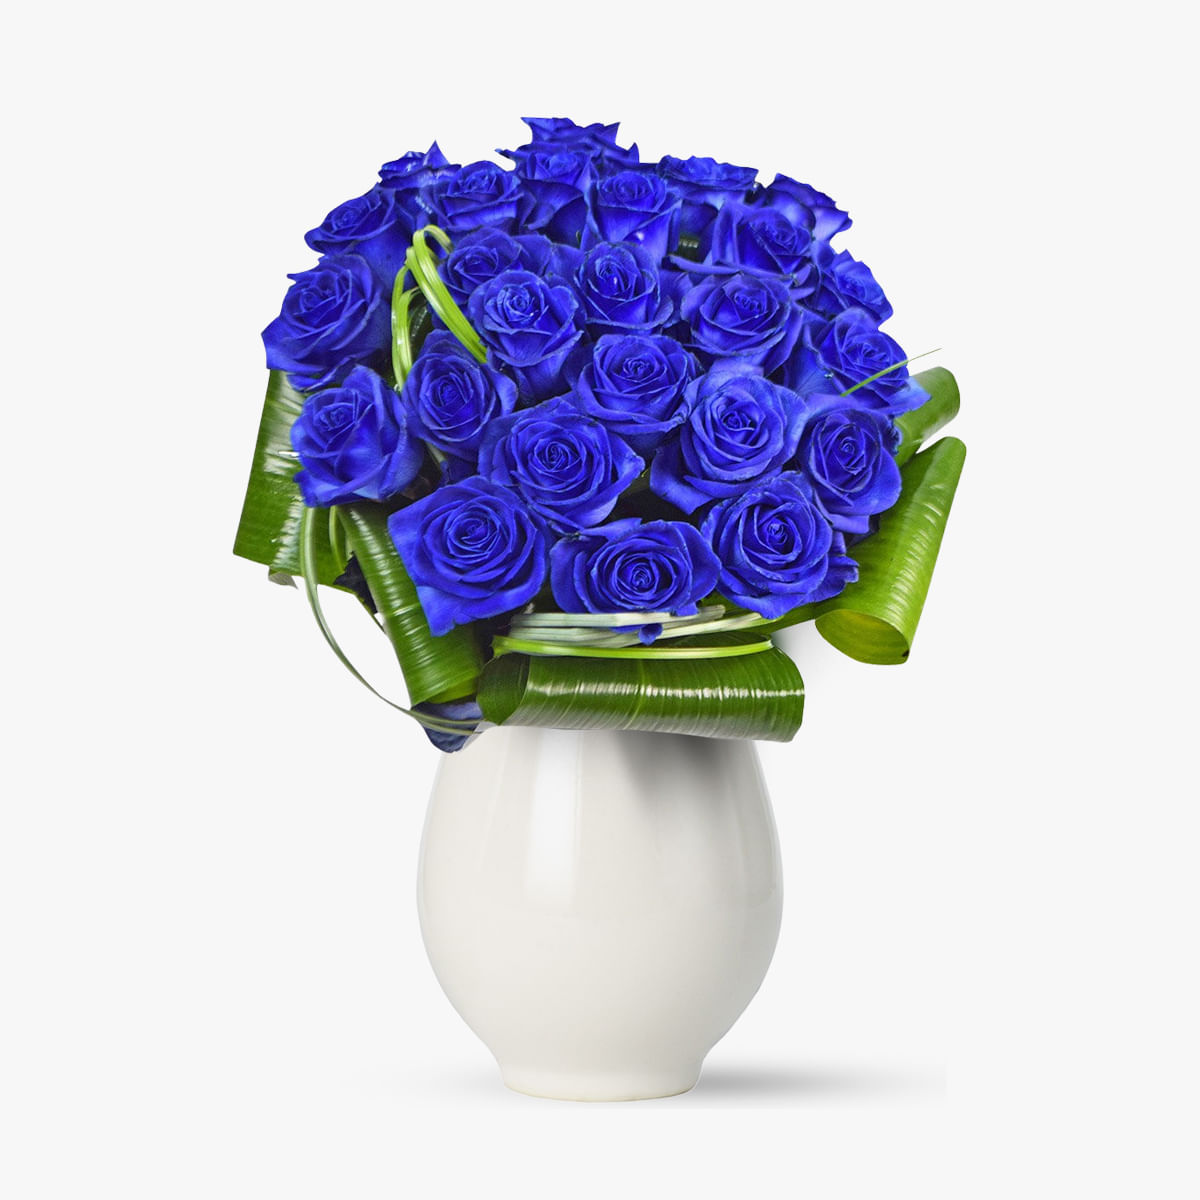 Buchet de 25 trandafiri albastri – Standard